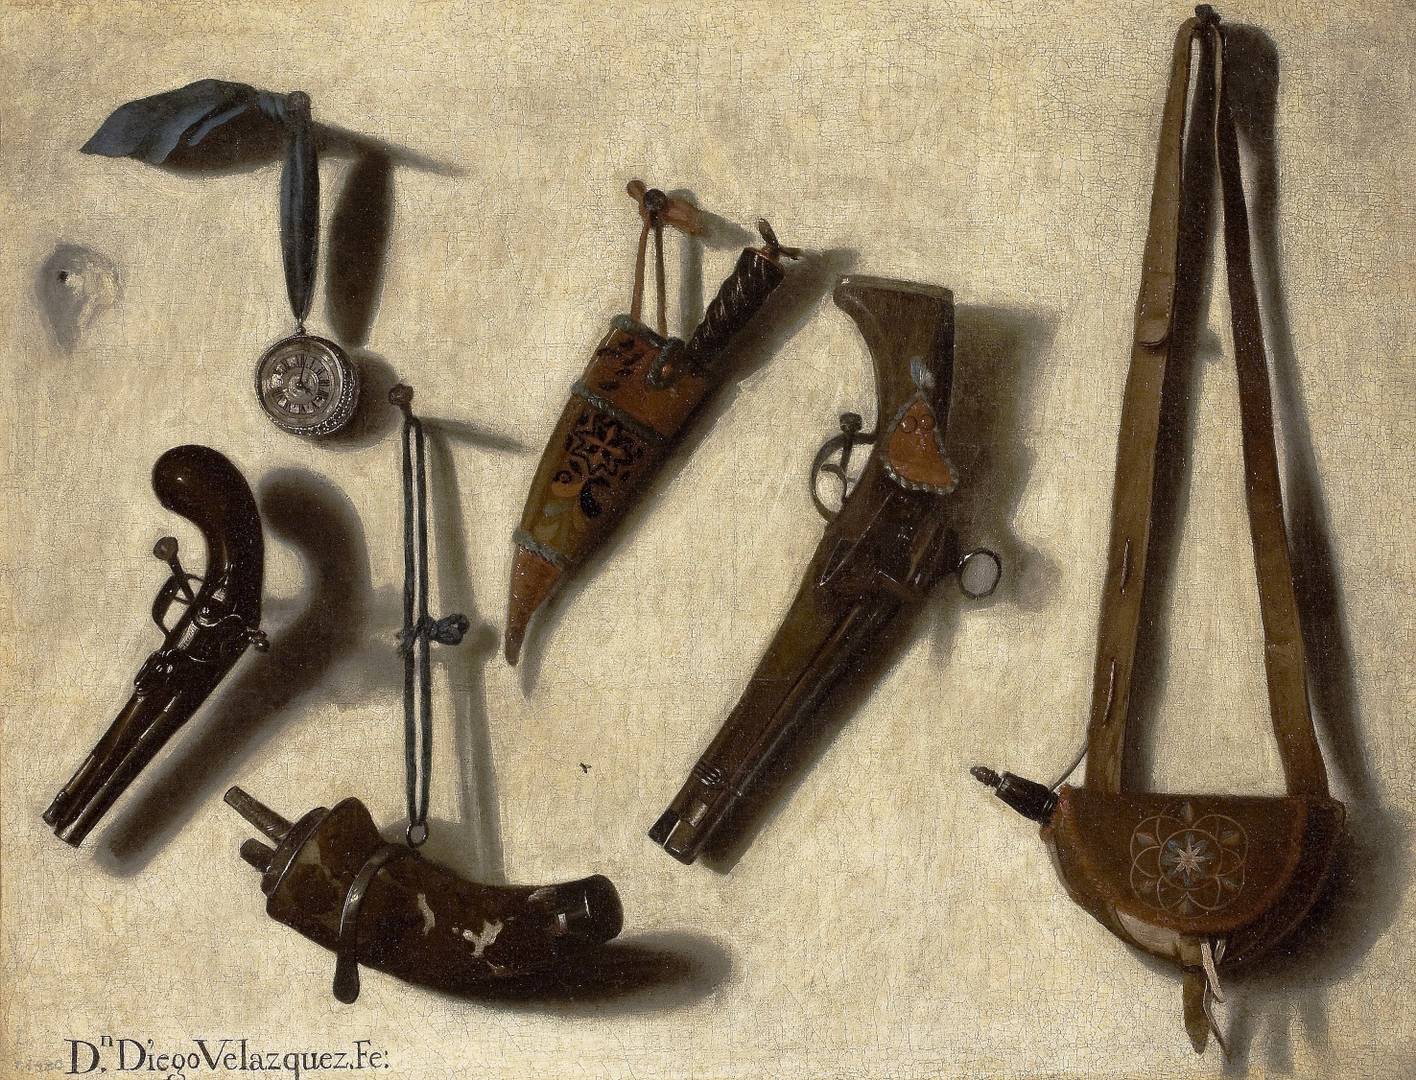 Висенте Викториа. Оружие и охотничье снаряжение. Около 1700